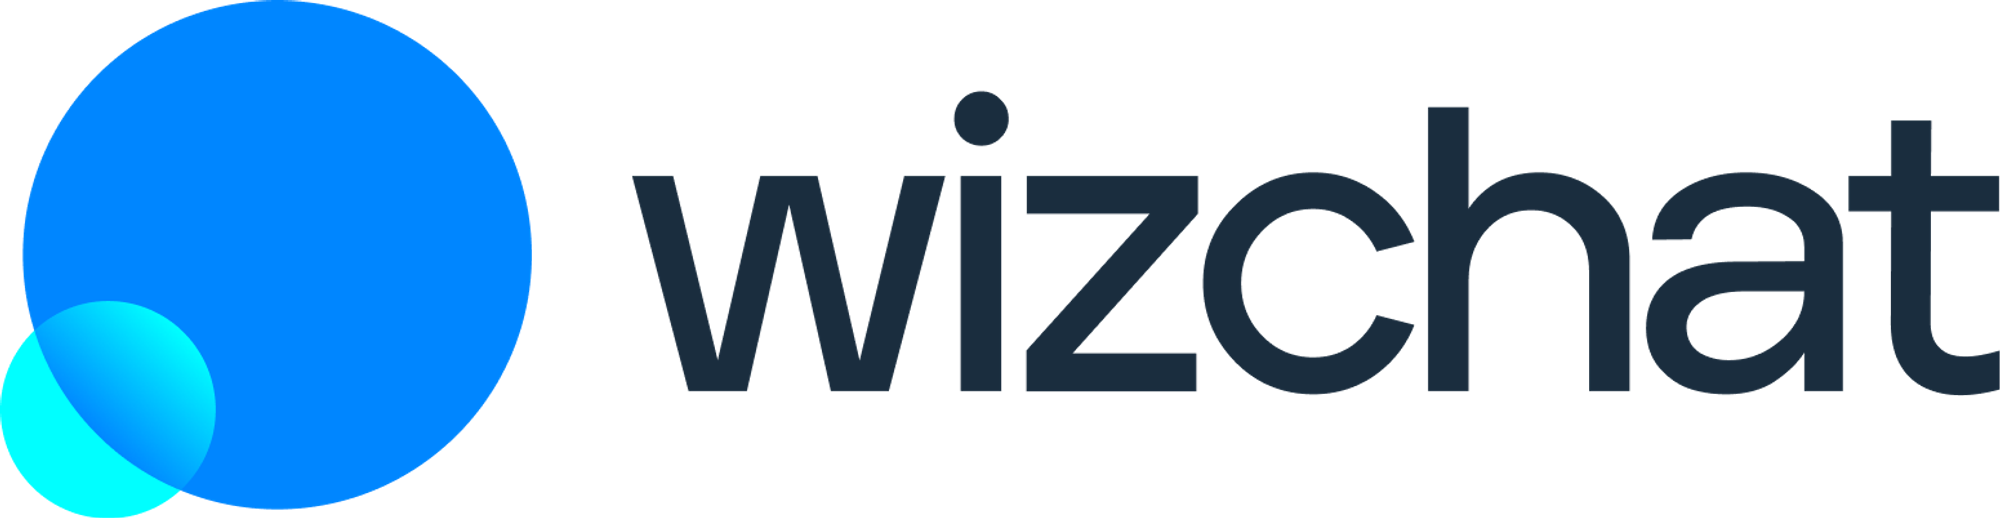 wizchat.io Logo